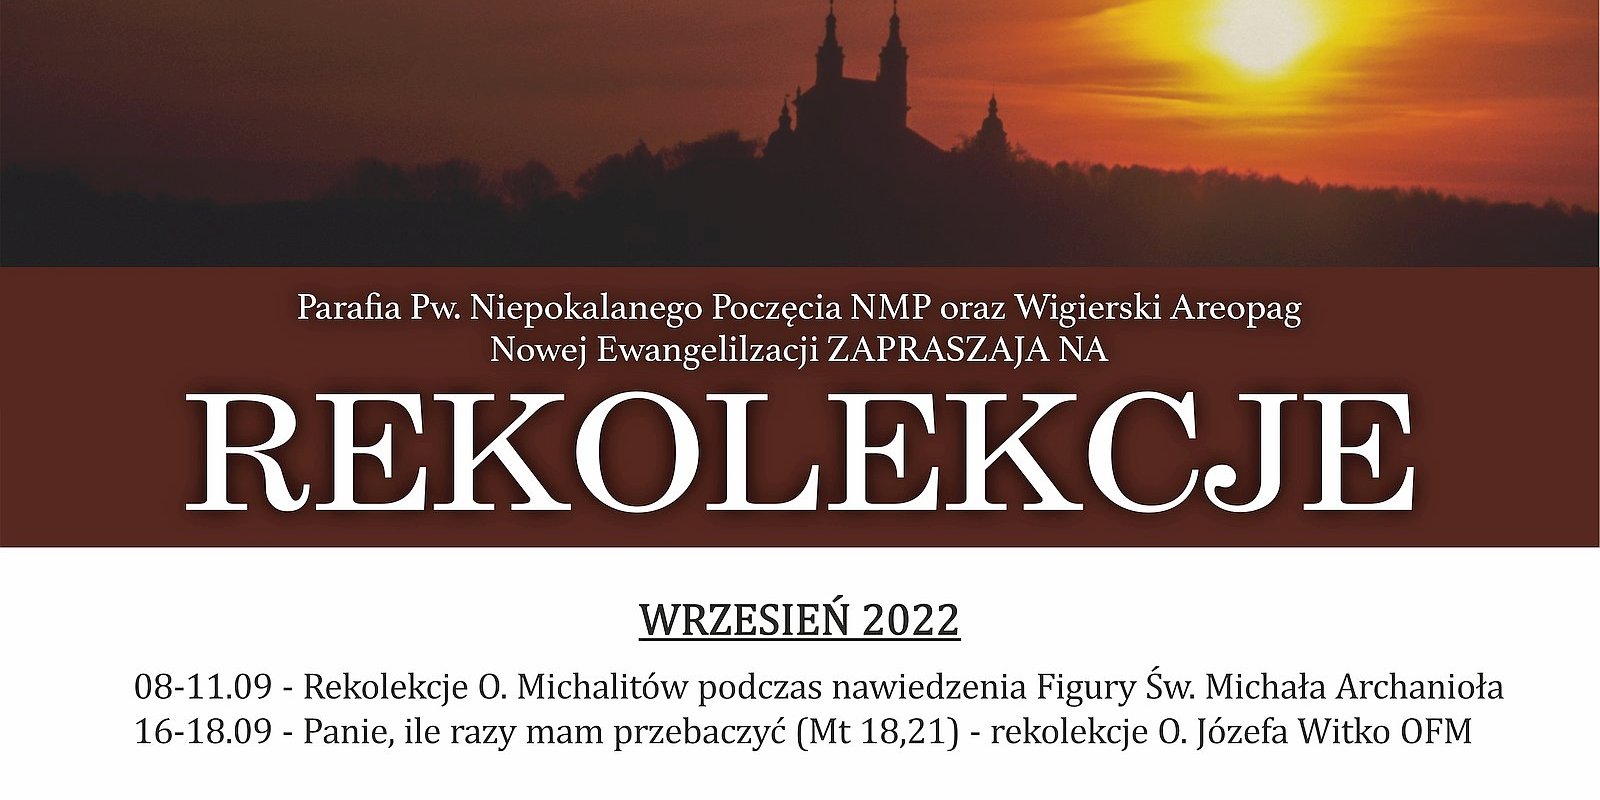 Rekolekcje i dni skupienia w Pokamedulskim Klasztorze w Wigrach - jesień'22